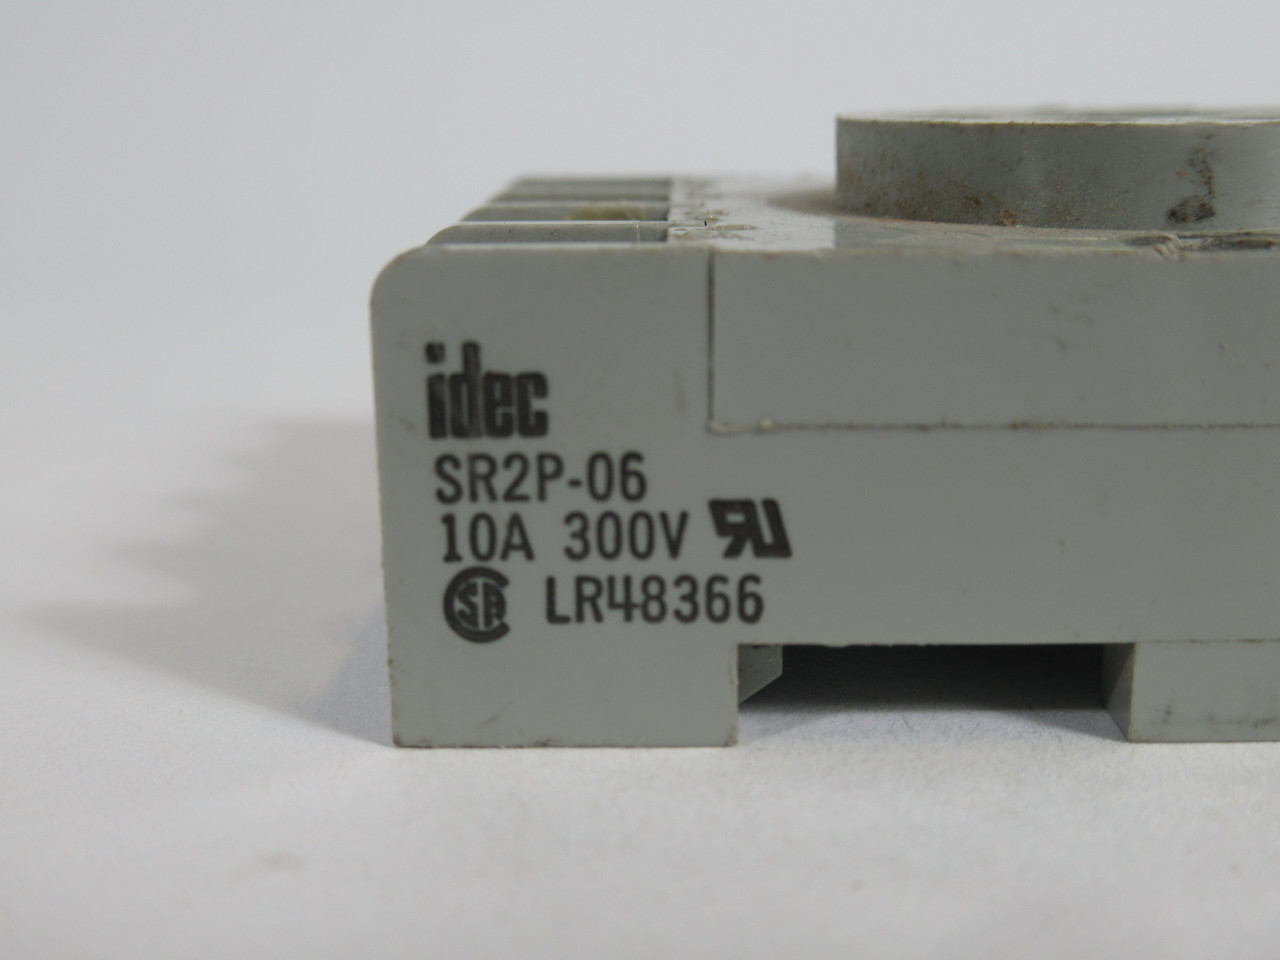 IDEC SR2P-06 Relay Socket 10A 30V MISSING SCREWS USED